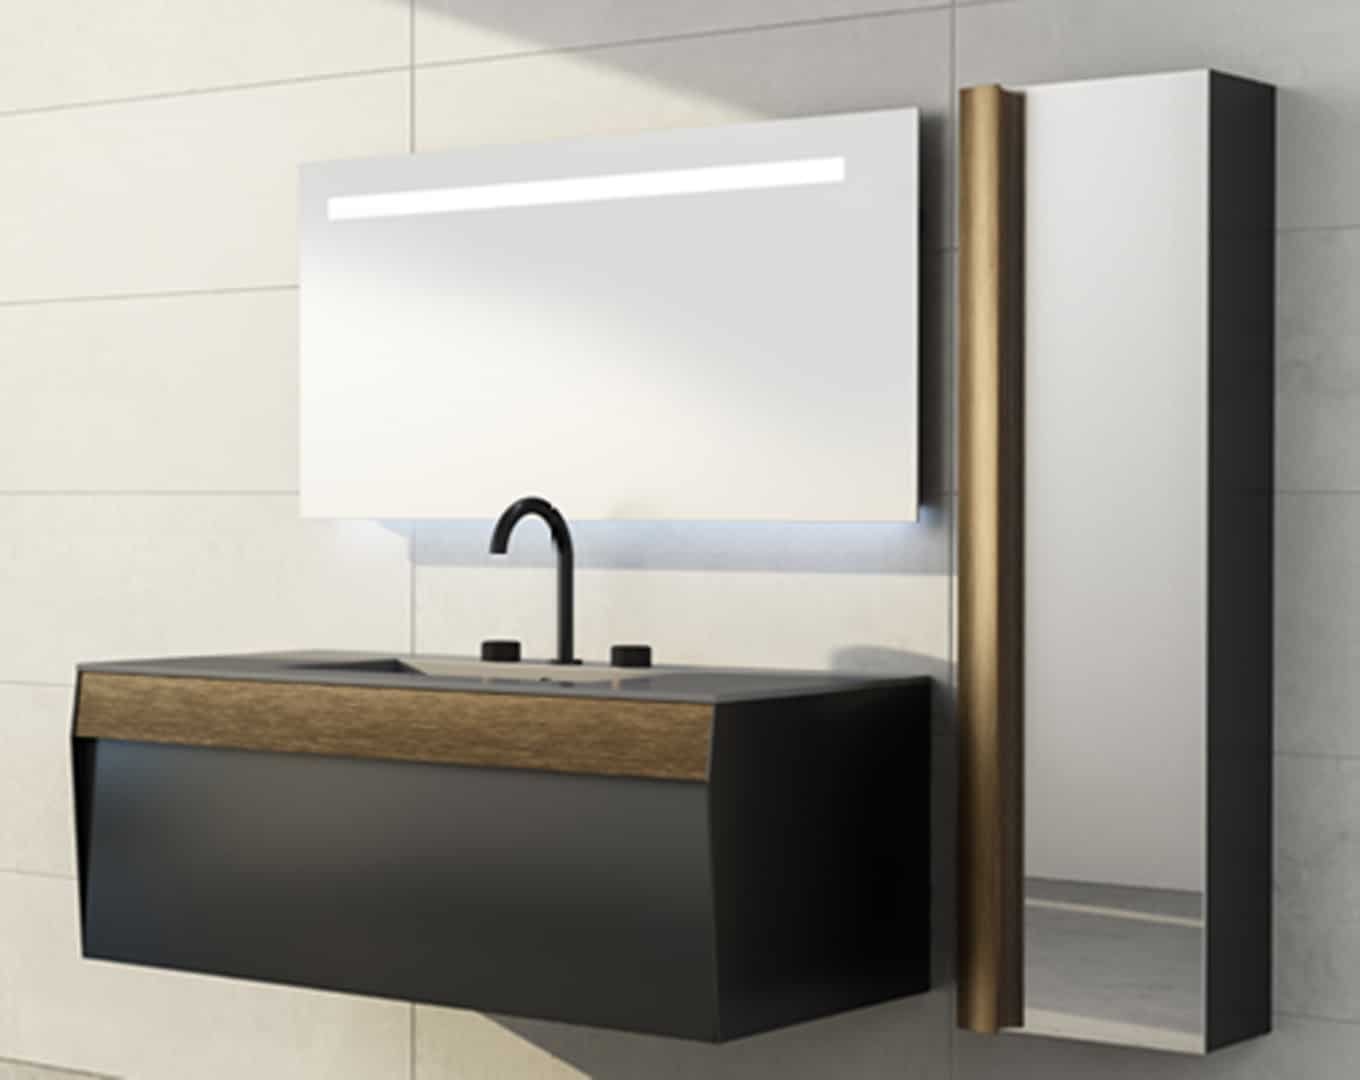 Salle de bain contemporaine avec un meuble-vasque noir élégant rehaussé de bois, une vasque à poser et un grand miroir éclairé par une bande lumineuse horizontale en